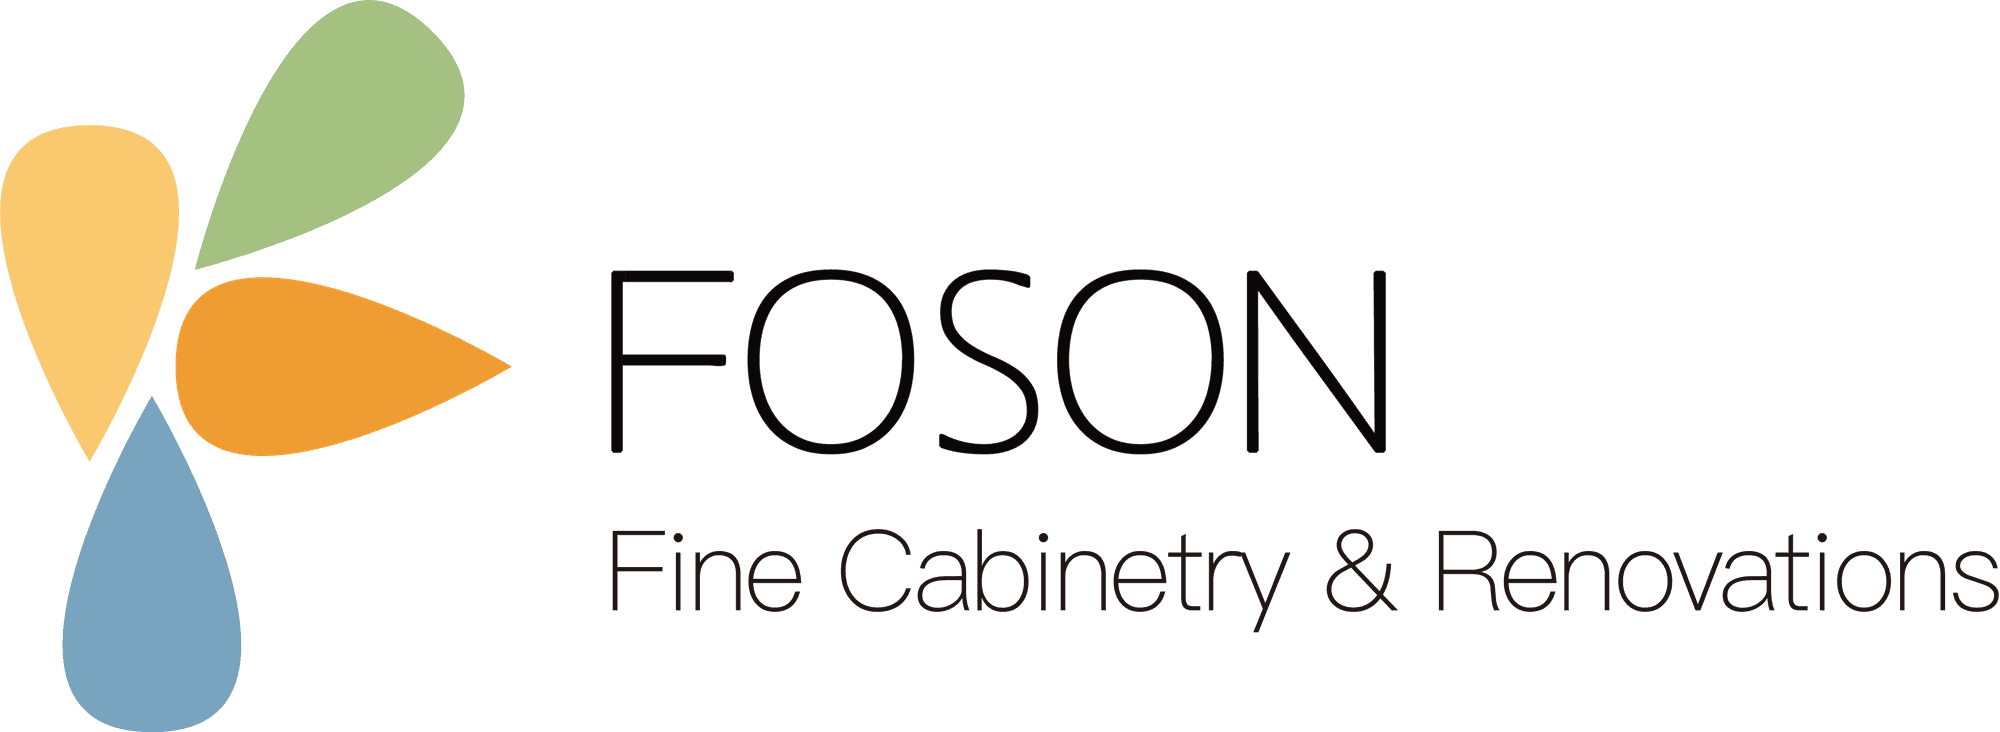 主赞助商：FOSON橱柜台面和装修集团 cover image